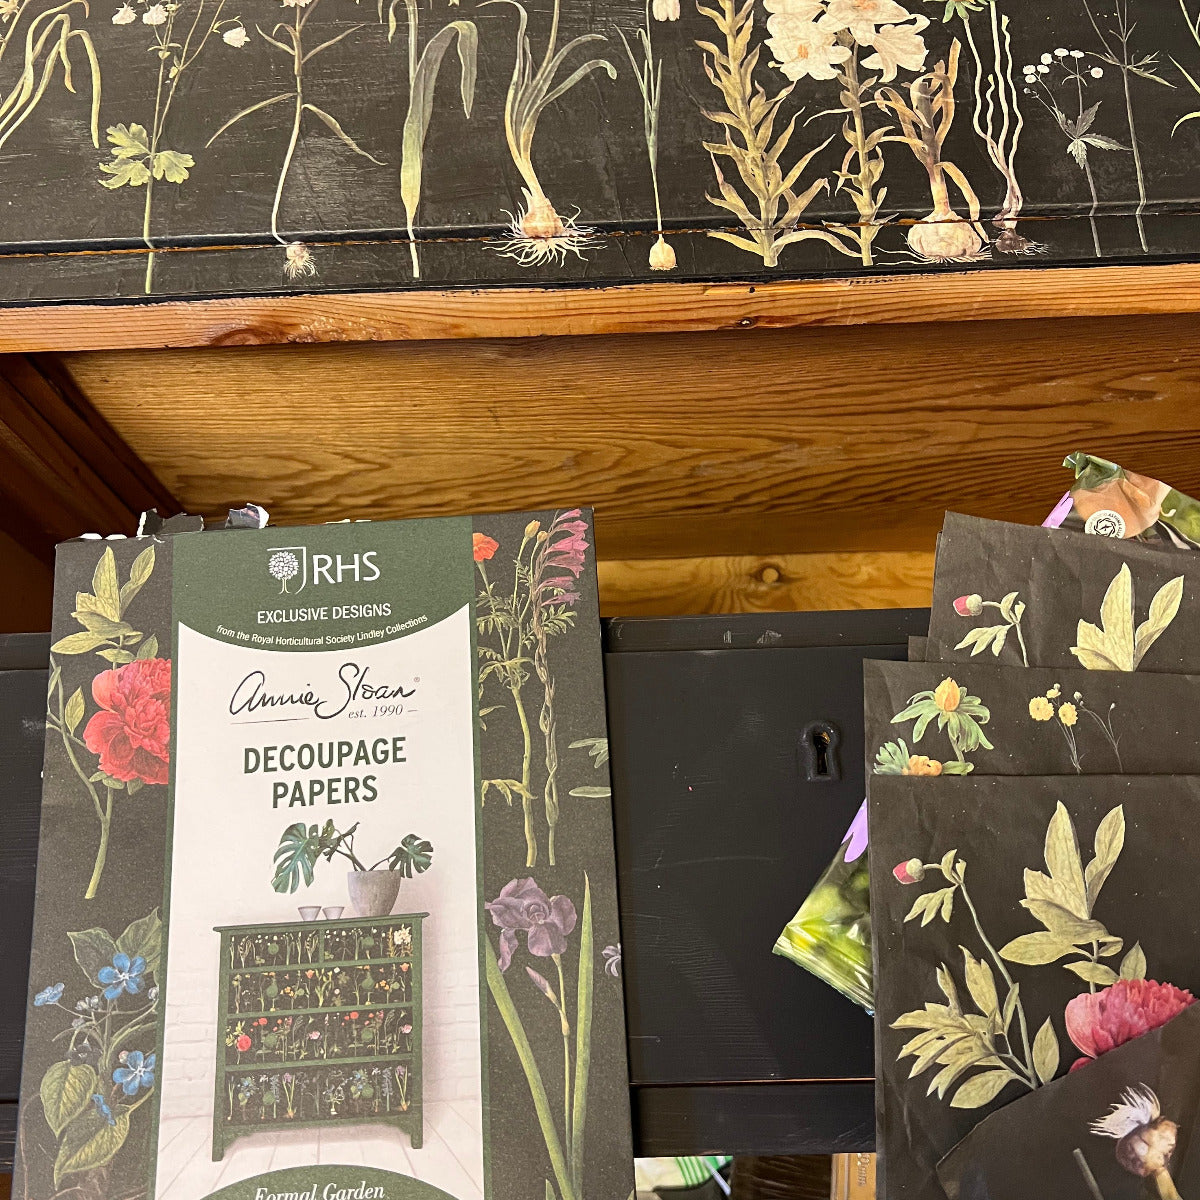 På lådorna har vi därför satt decopagepapper med trädgårdsblommor, RHS Decoupage Formal Garden, som Annie Sloan har tagit fram i samarbete med The Royal Horticultural Society I Storbritannien